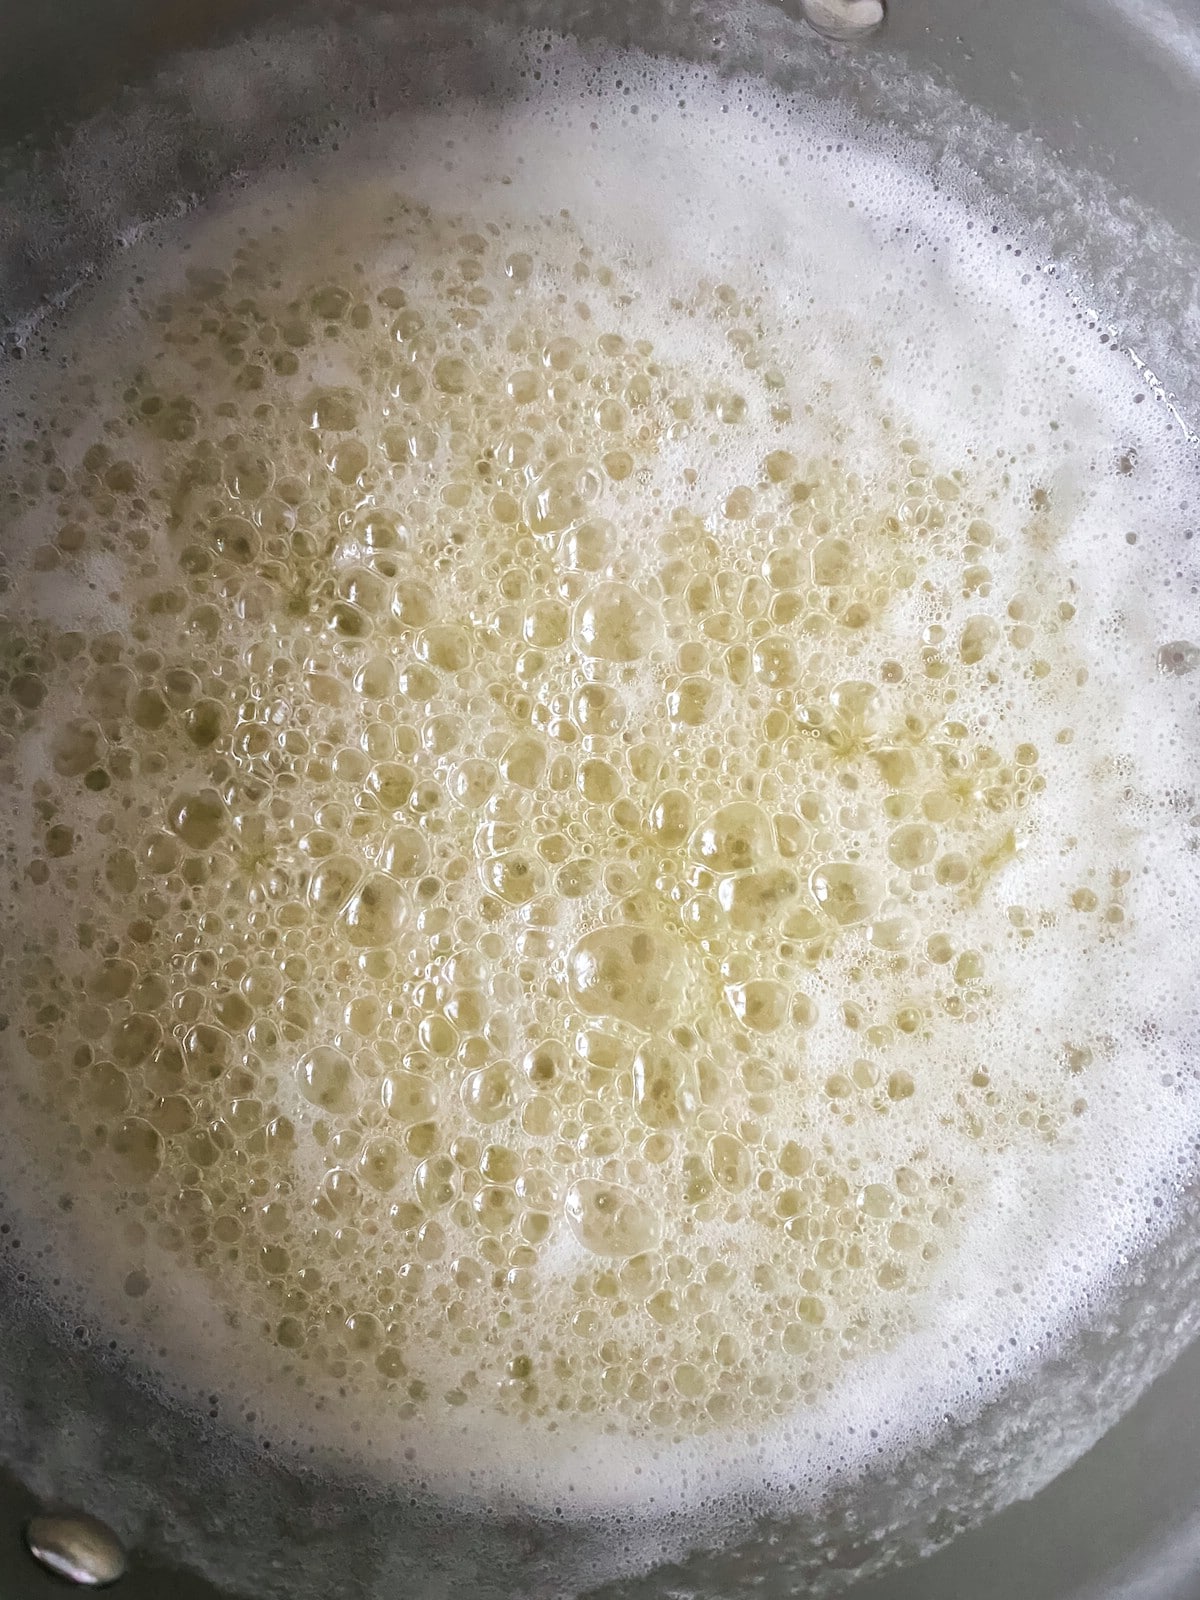 Bubbling butter sugar mixture